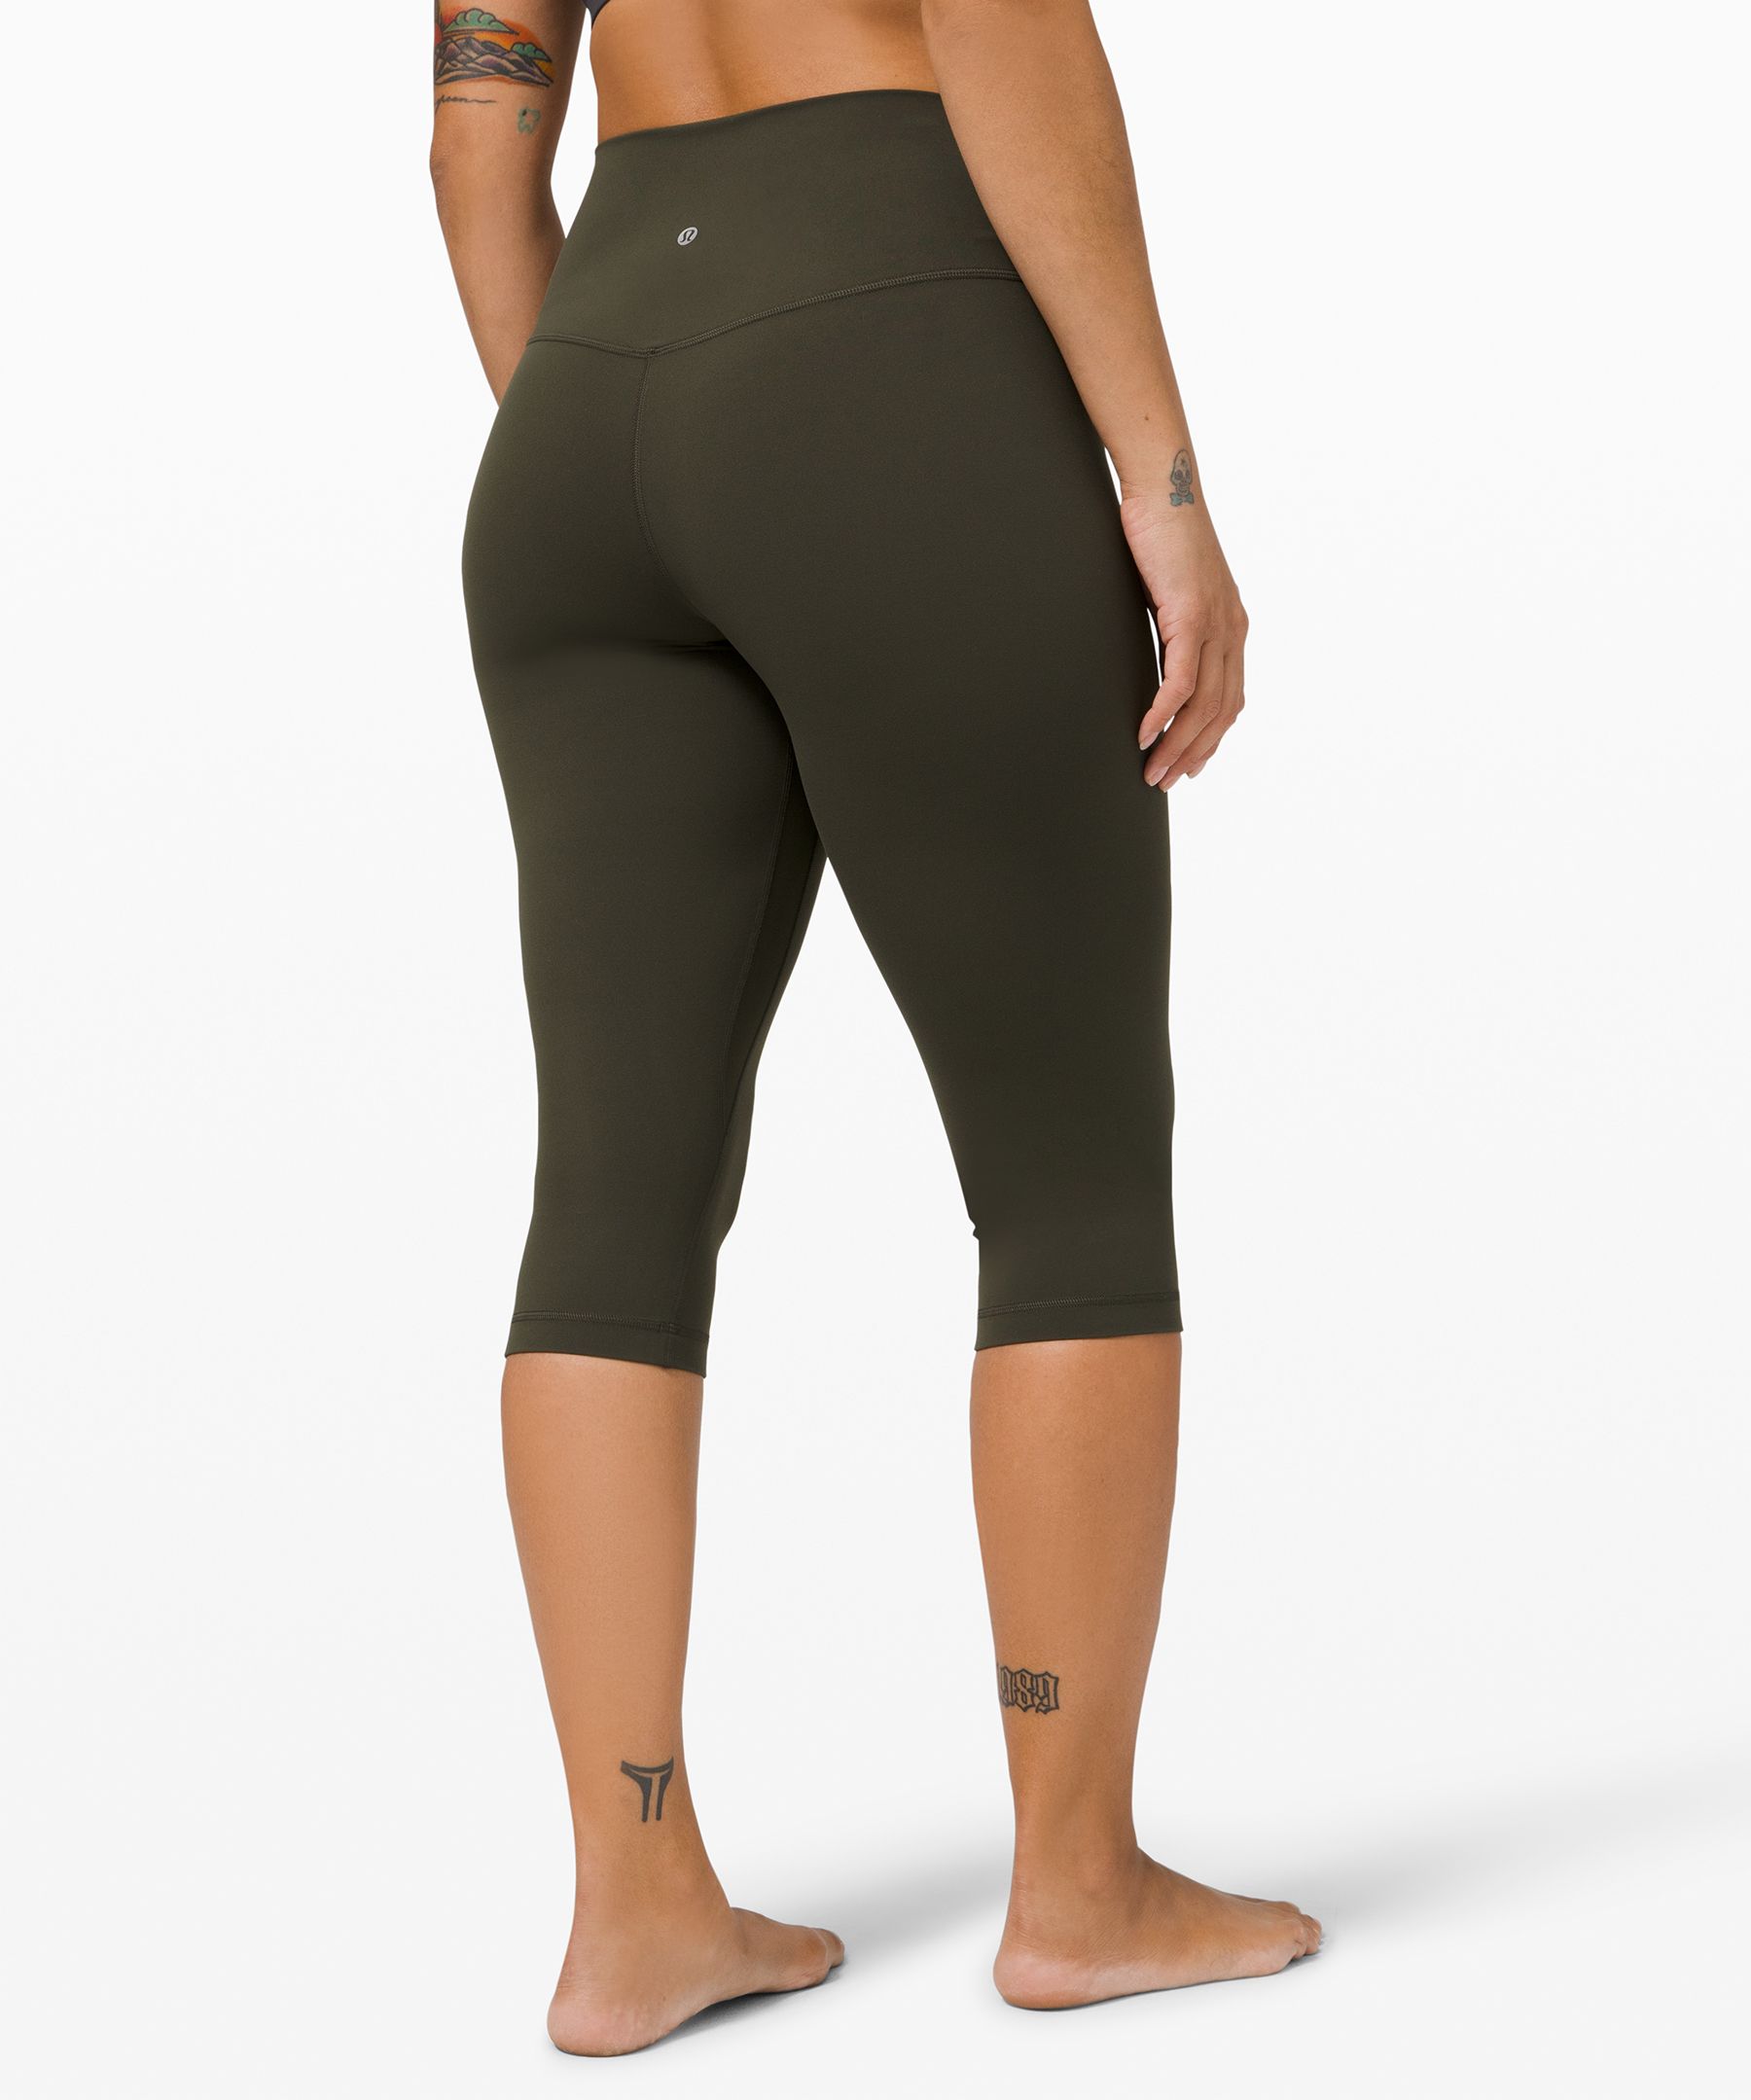 Lululemon Flow & Go Crop Women's Size 4 Legging Dark Carbon Black 17”  Inseam